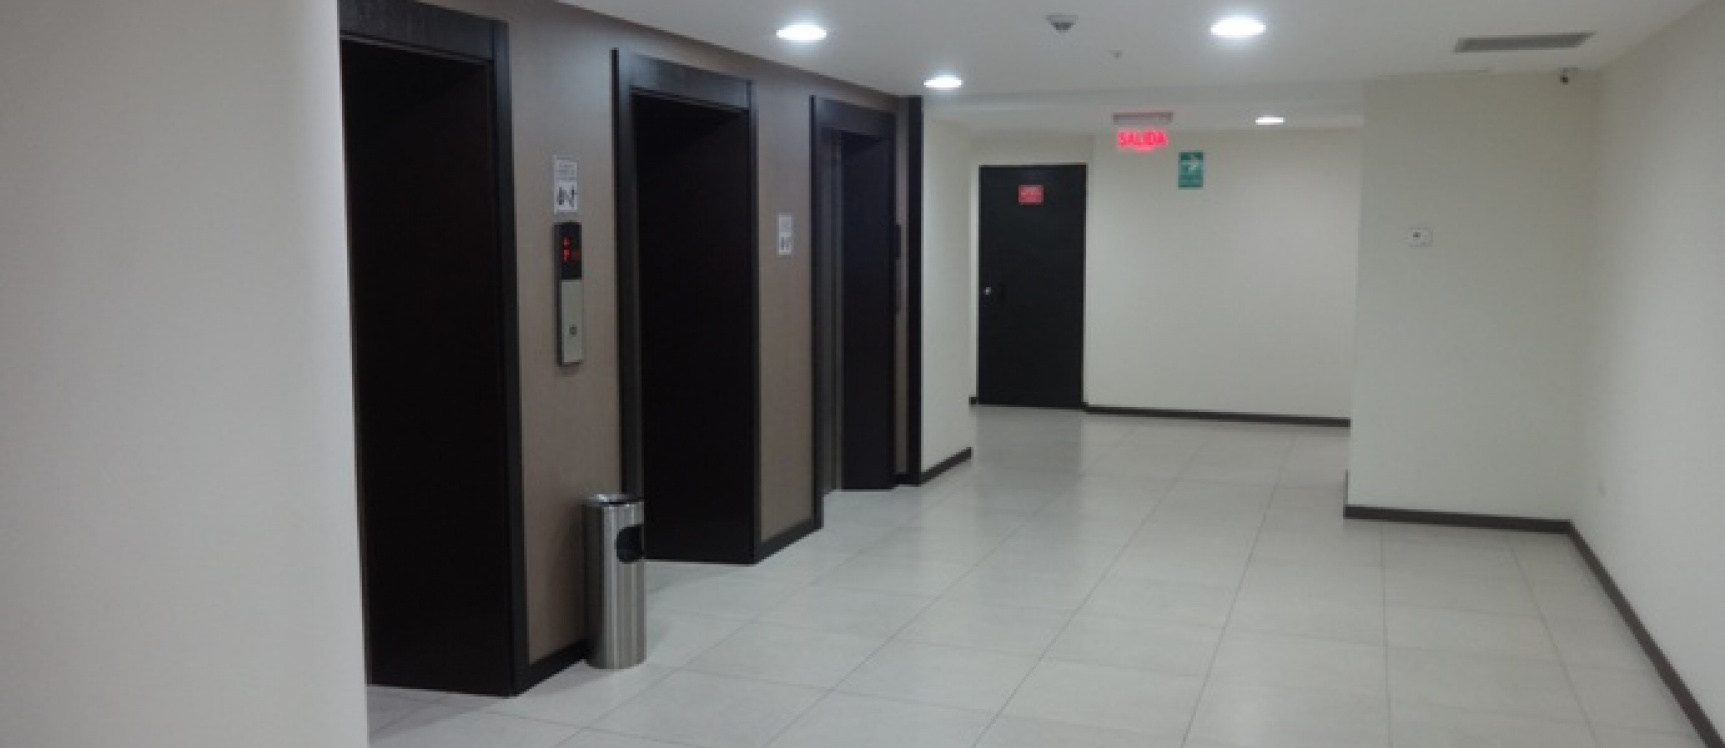 GeoBienes - Alquilo oficina en The Point, 62m2 con parqueo. - Plusvalia Guayaquil Casas de venta y alquiler Inmobiliaria Ecuador